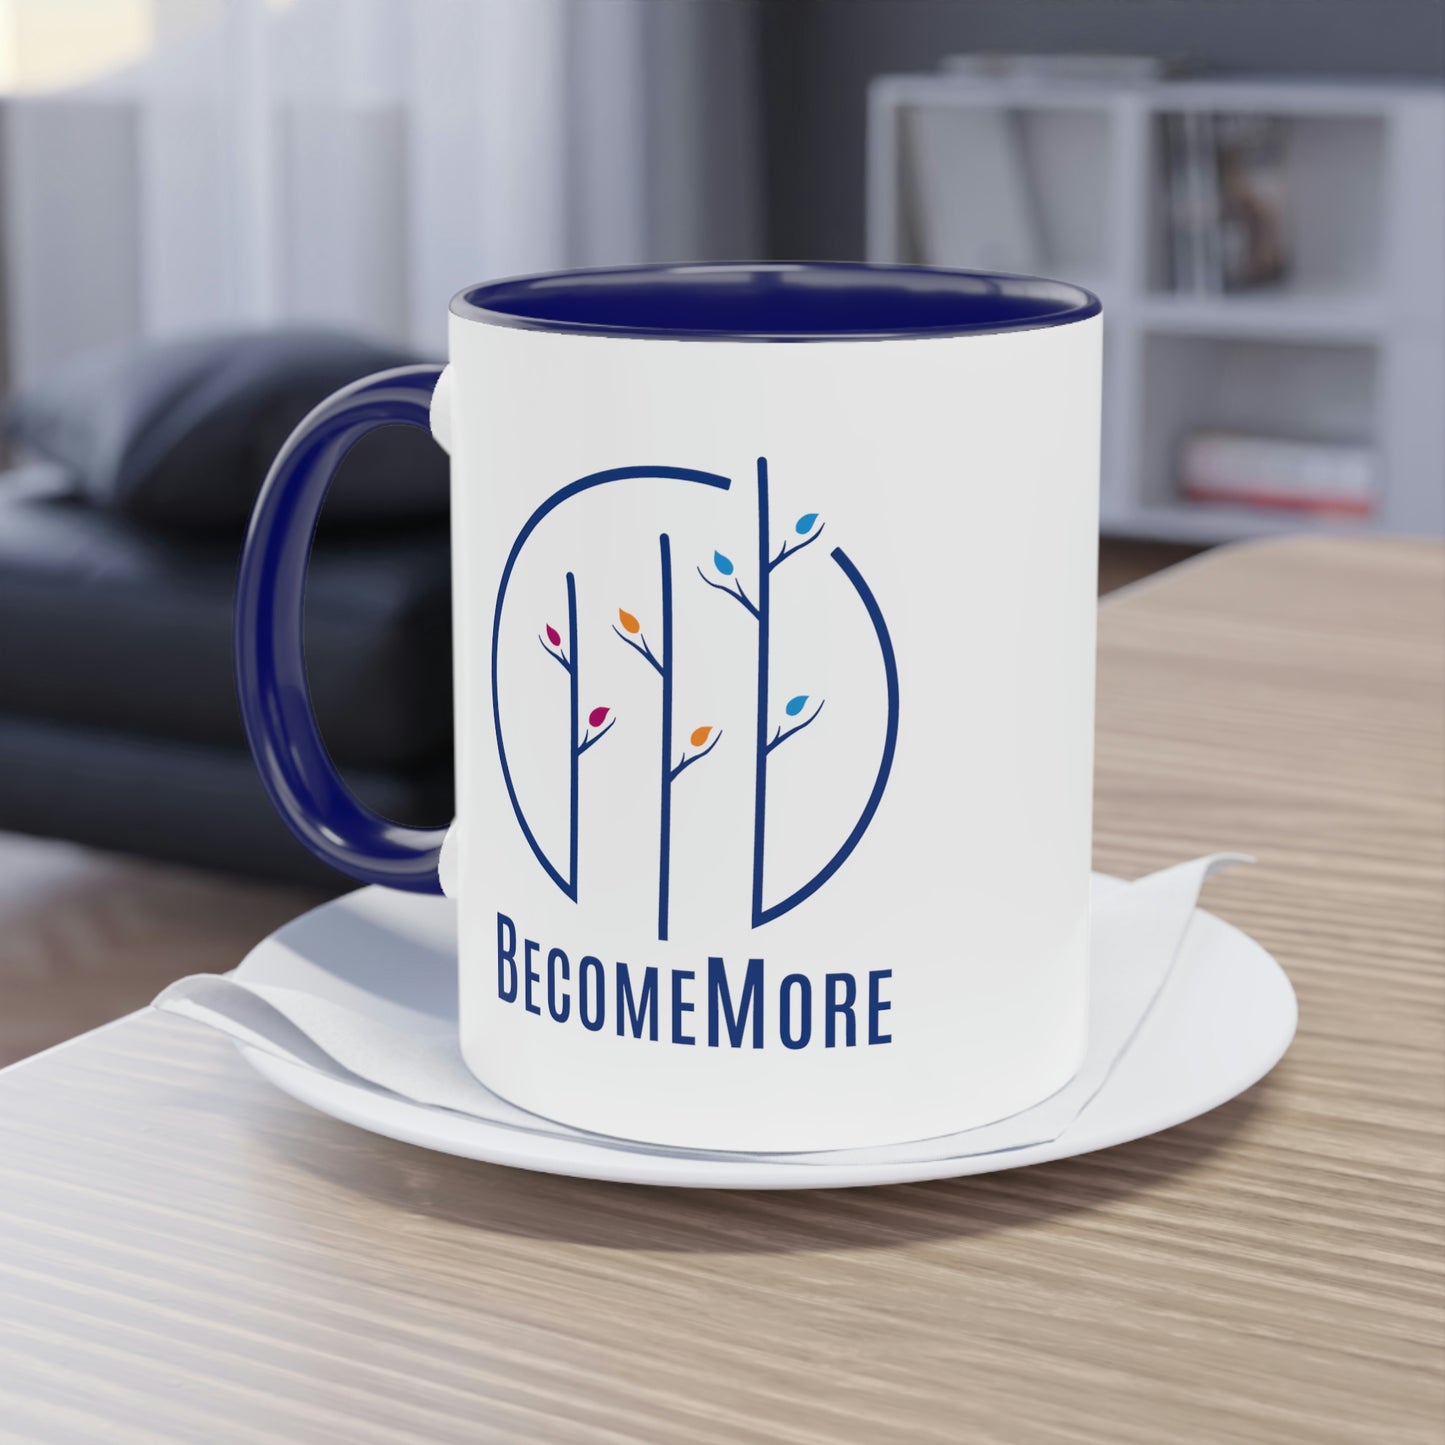 BecomeMore Coffee Mug, 11oz